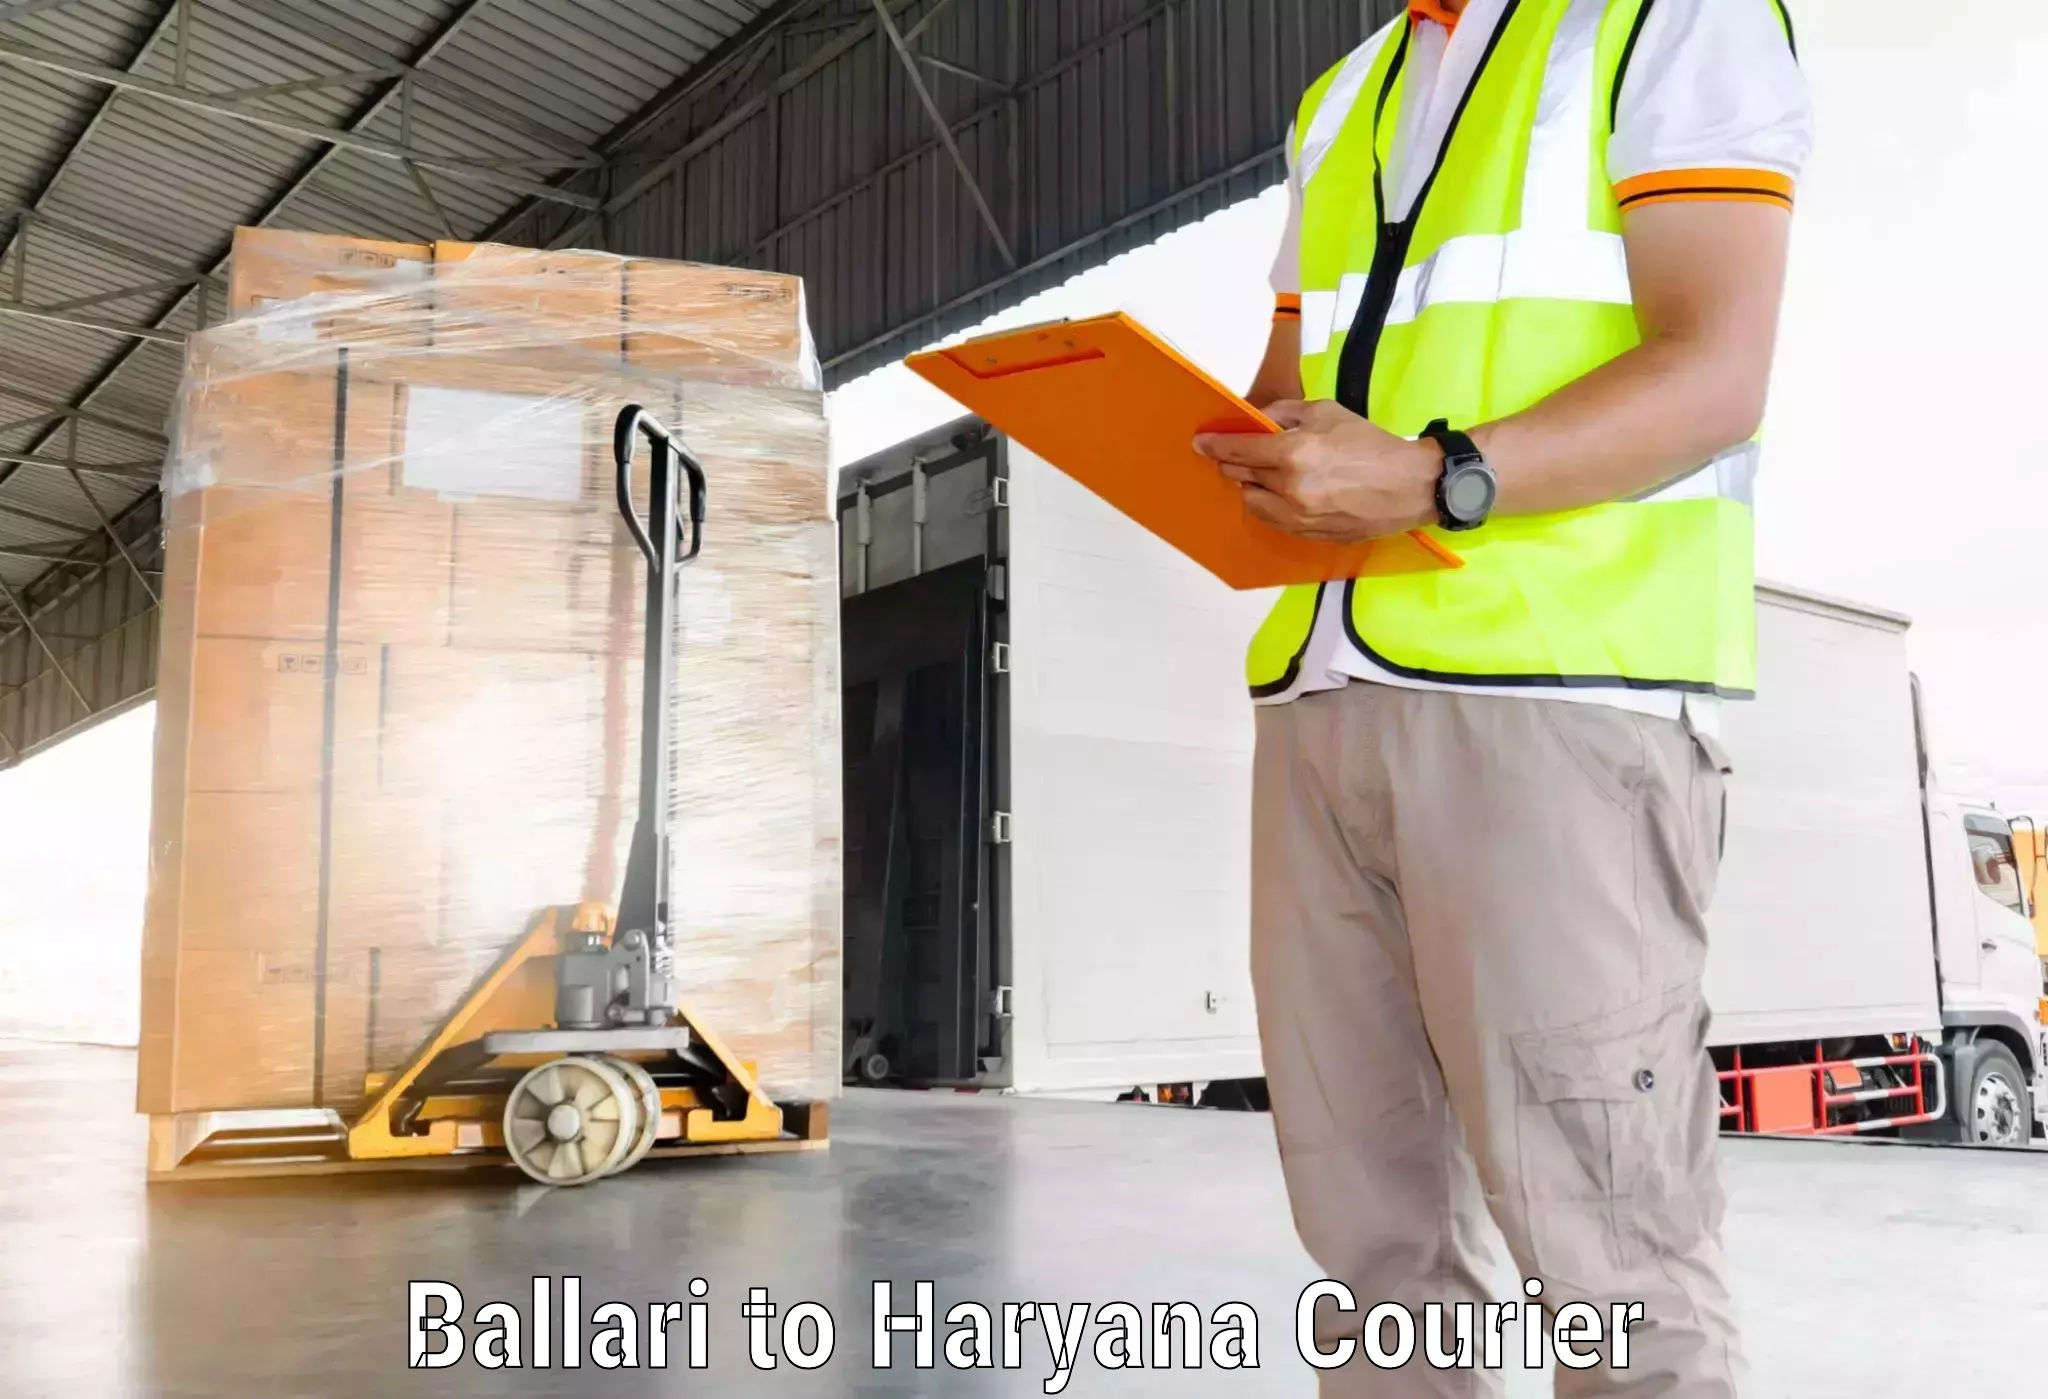 Cargo delivery service Ballari to Ellenabad